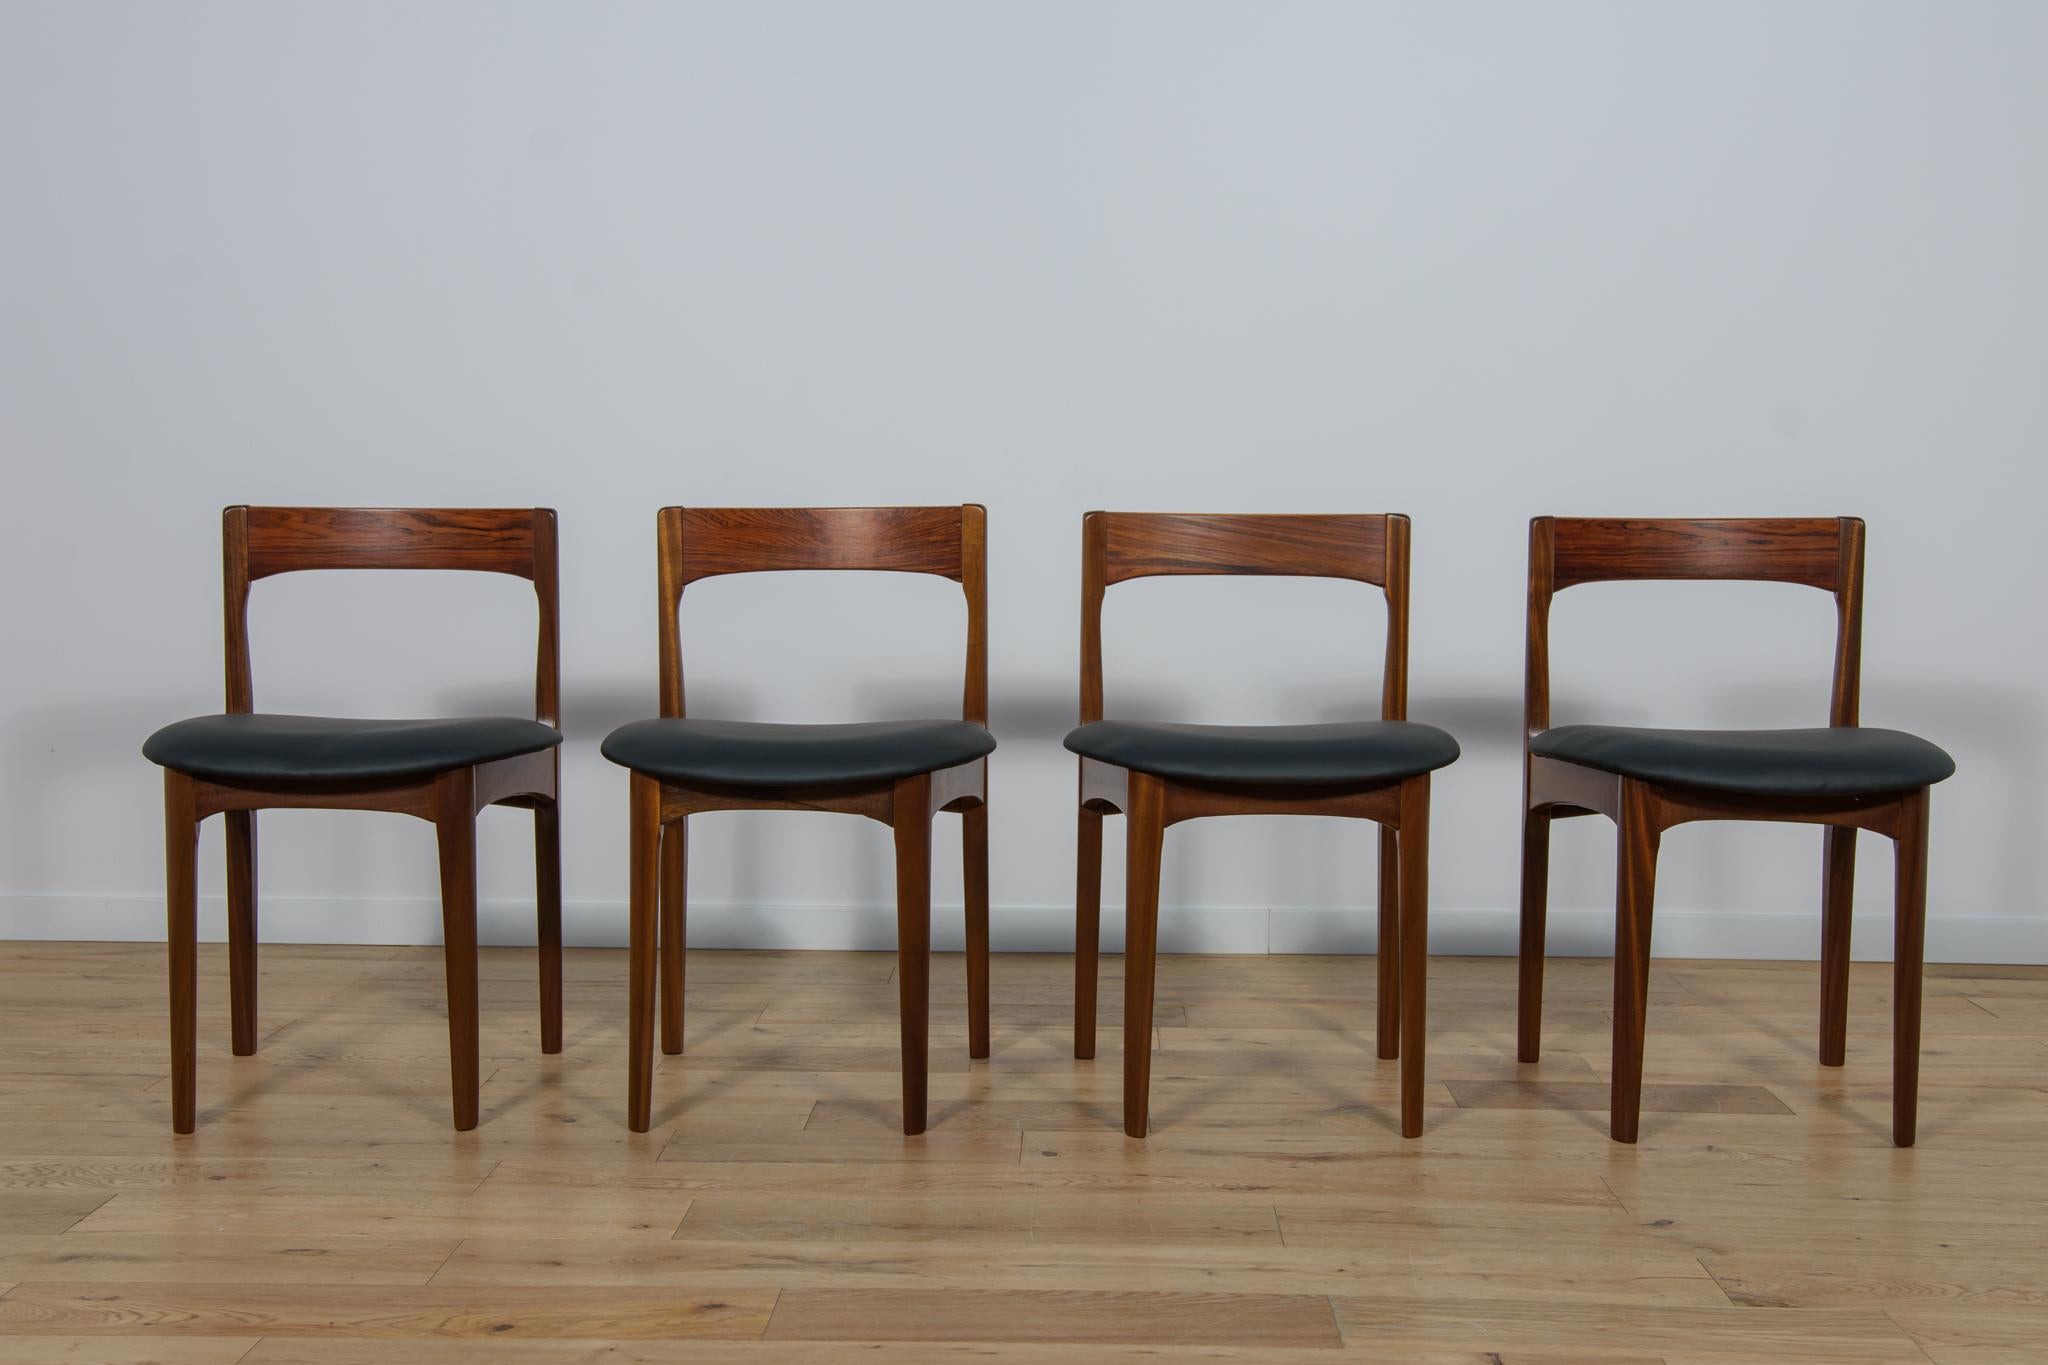 Das Set aus vier Stühlen wurde in den 1960er Jahren in Großbritannien hergestellt. Das Gestell der Stühle ist aus Teakholz, die Rückenlehnen sind aus Palisanderholz gefertigt. Die Möbel wurden gründlich renoviert, von alten Anstrichen befreit, mit